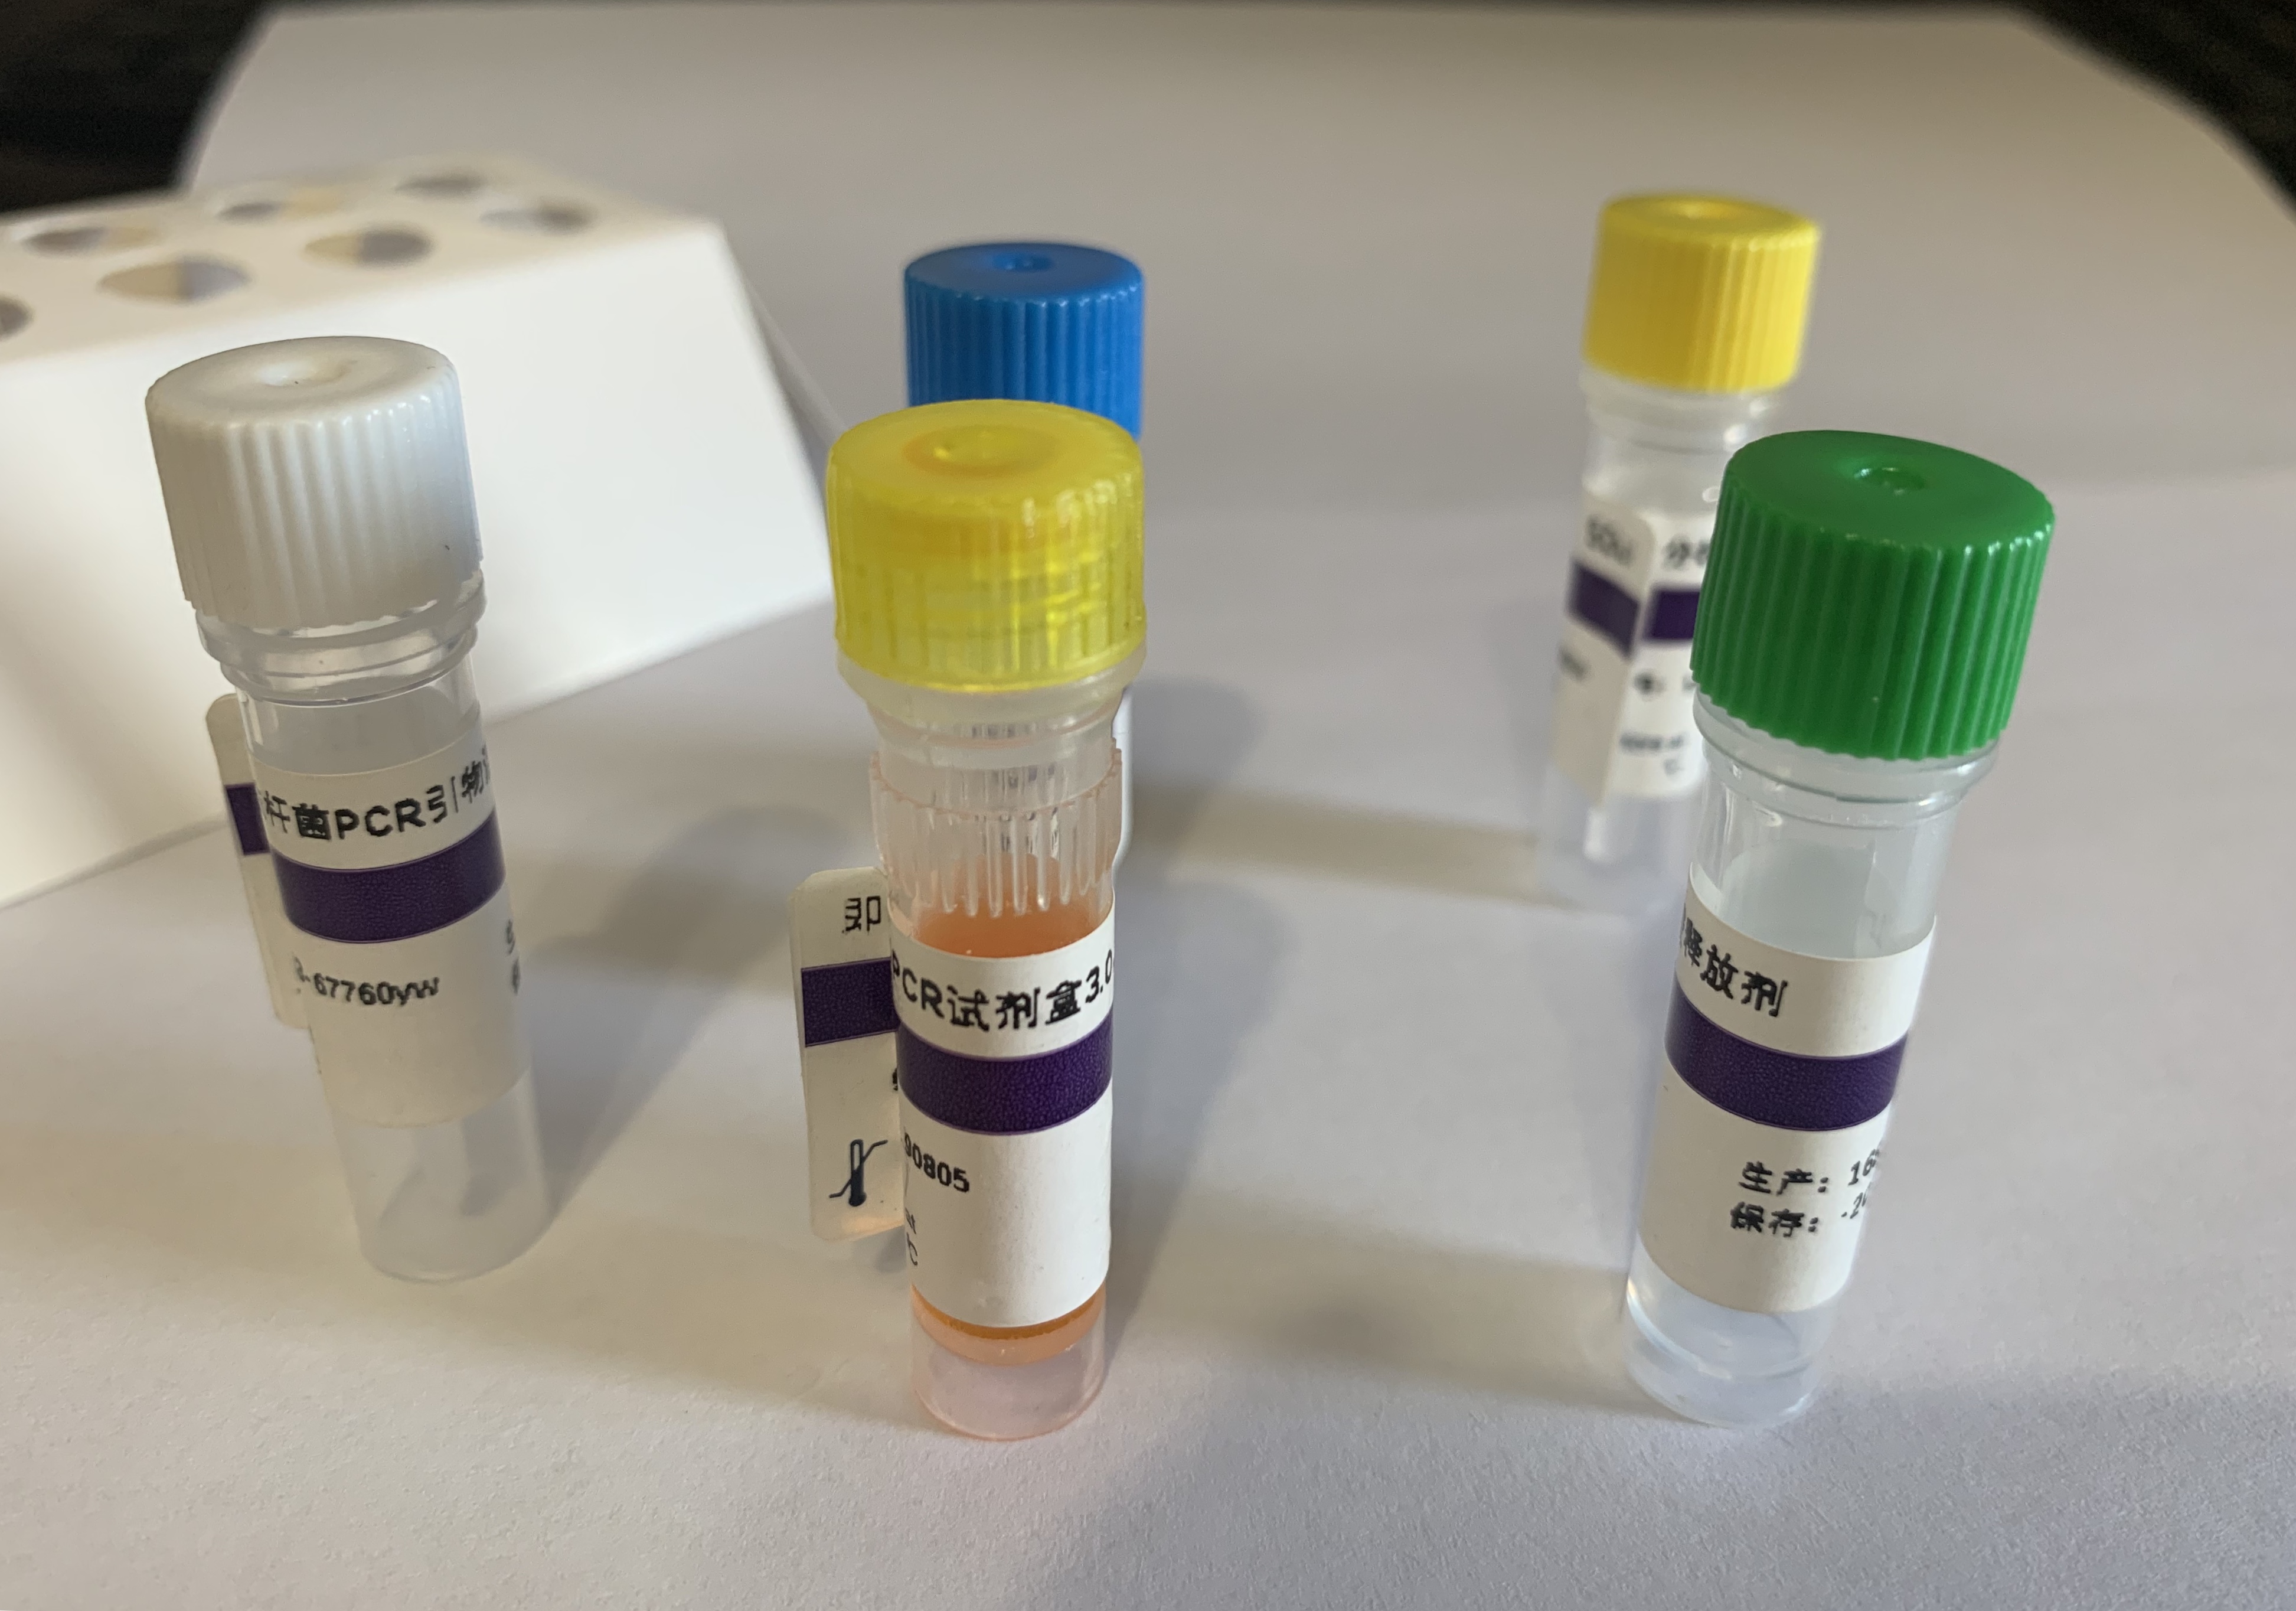 锦鲤疱疹病毒TK基因PCR试剂盒